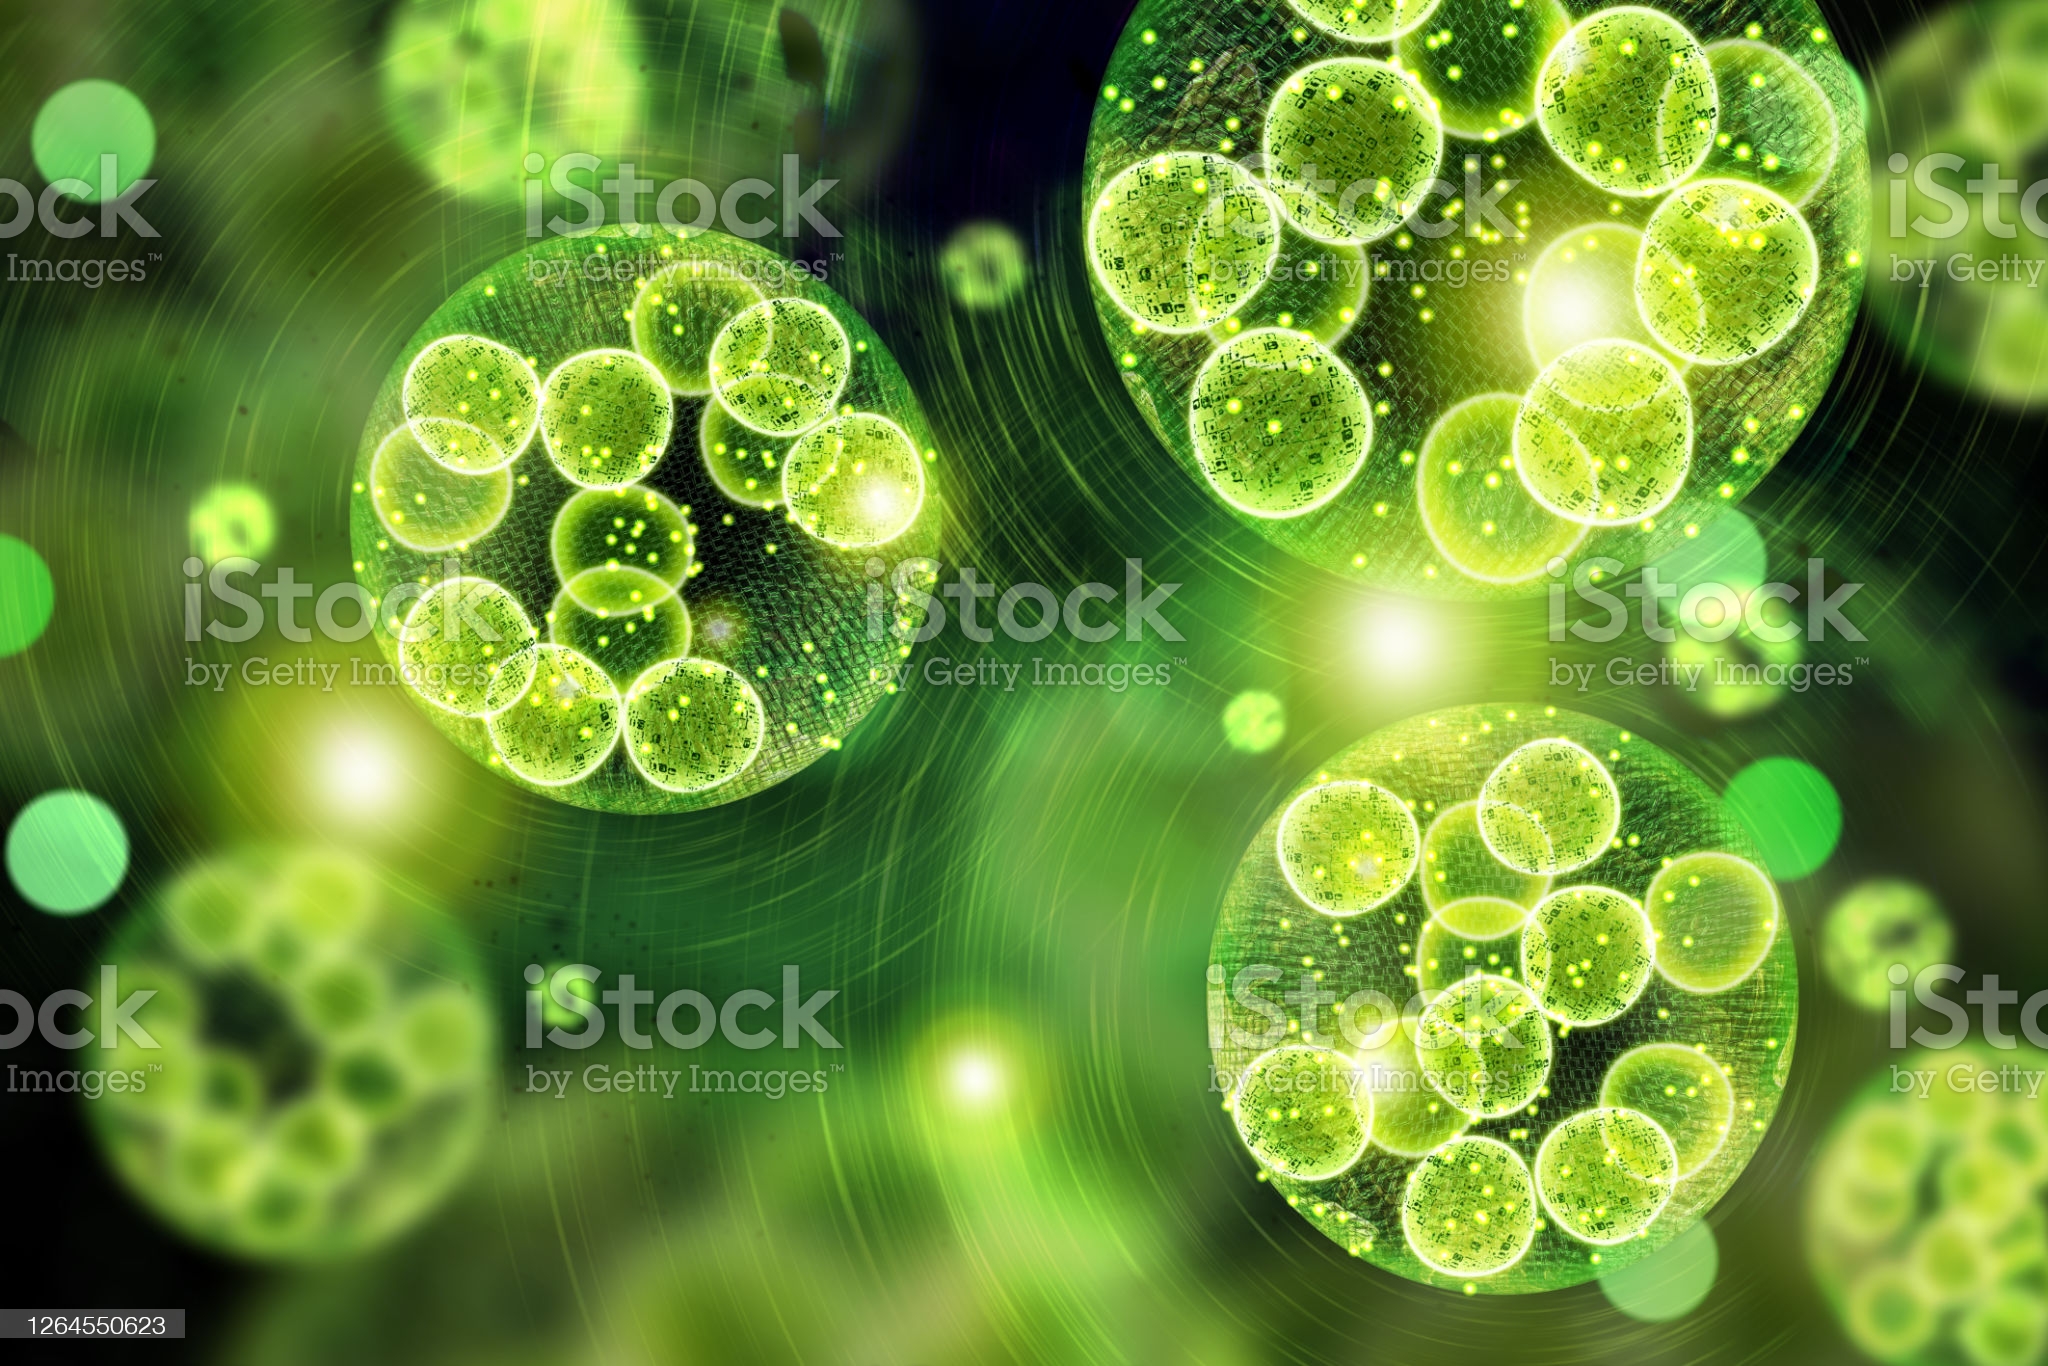 녹색 조류 미세조류 세포 